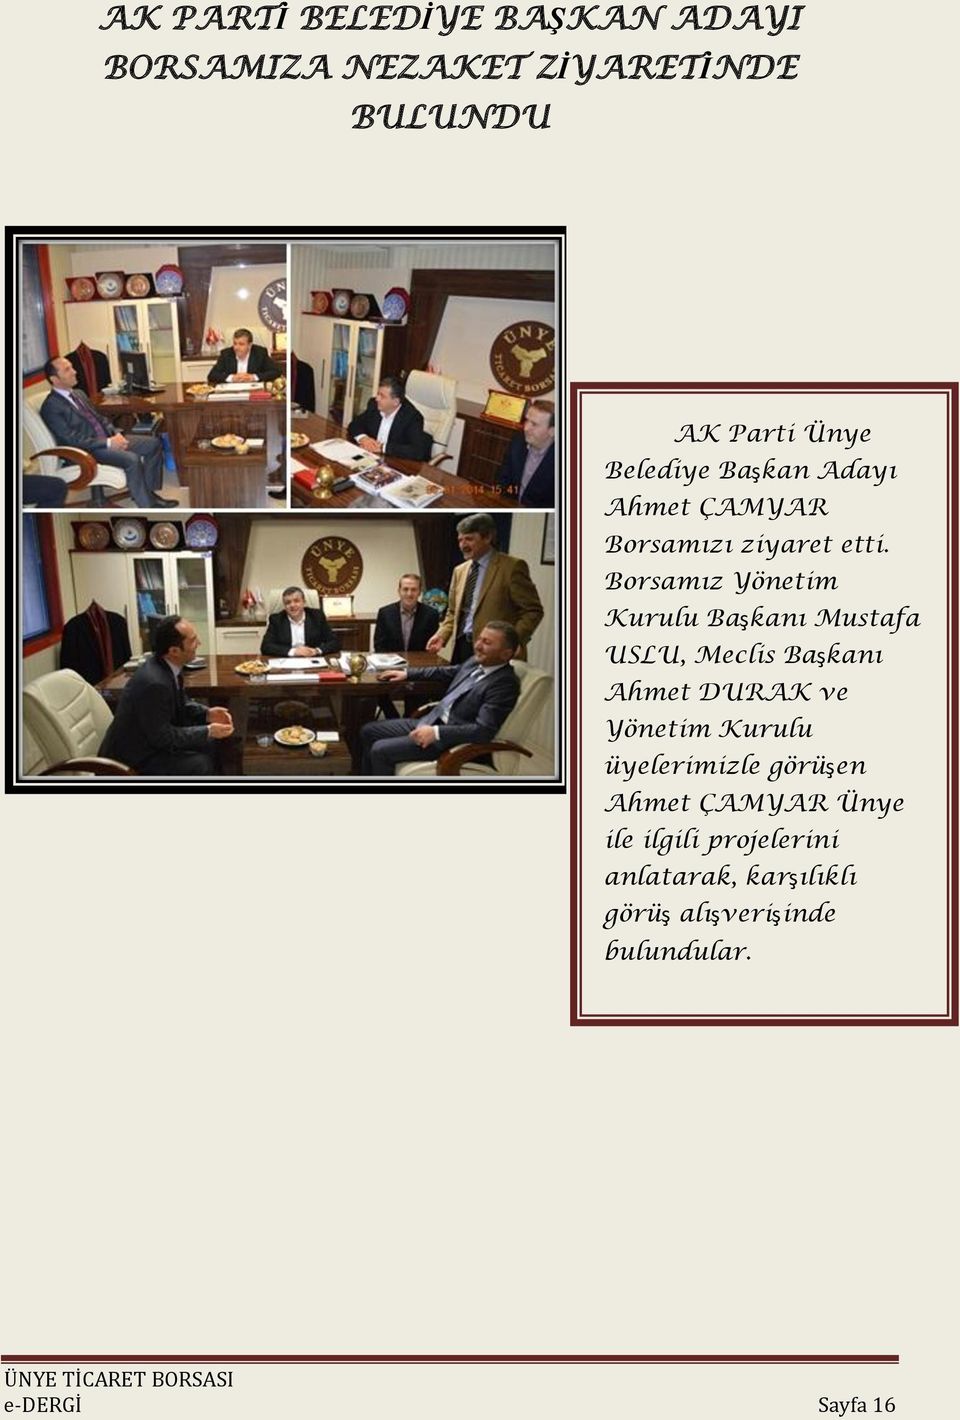 Borsamız Yönetim Kurulu Başkanı Mustafa USLU, Meclis Başkanı Ahmet DURAK ve Yönetim Kurulu